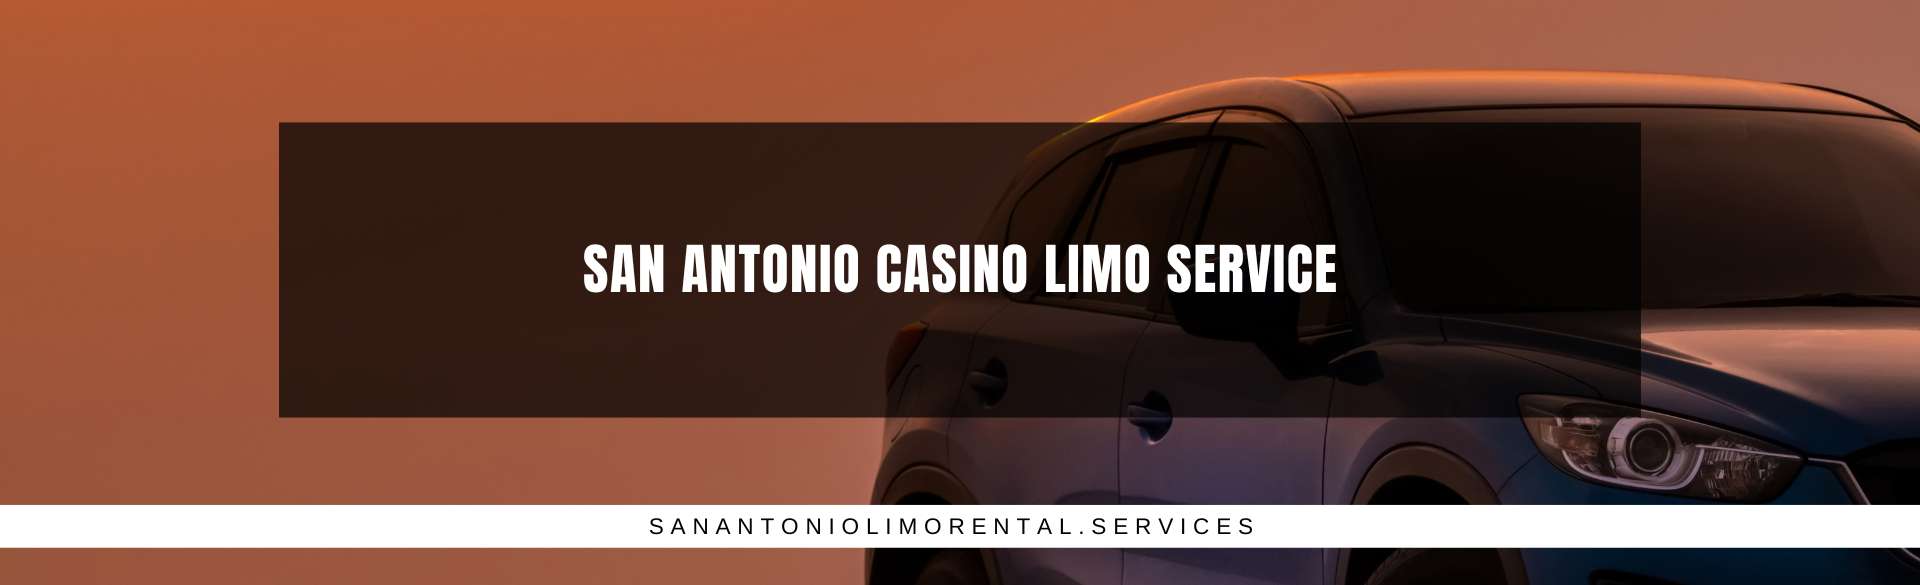 San Antonio Casino Limo Service